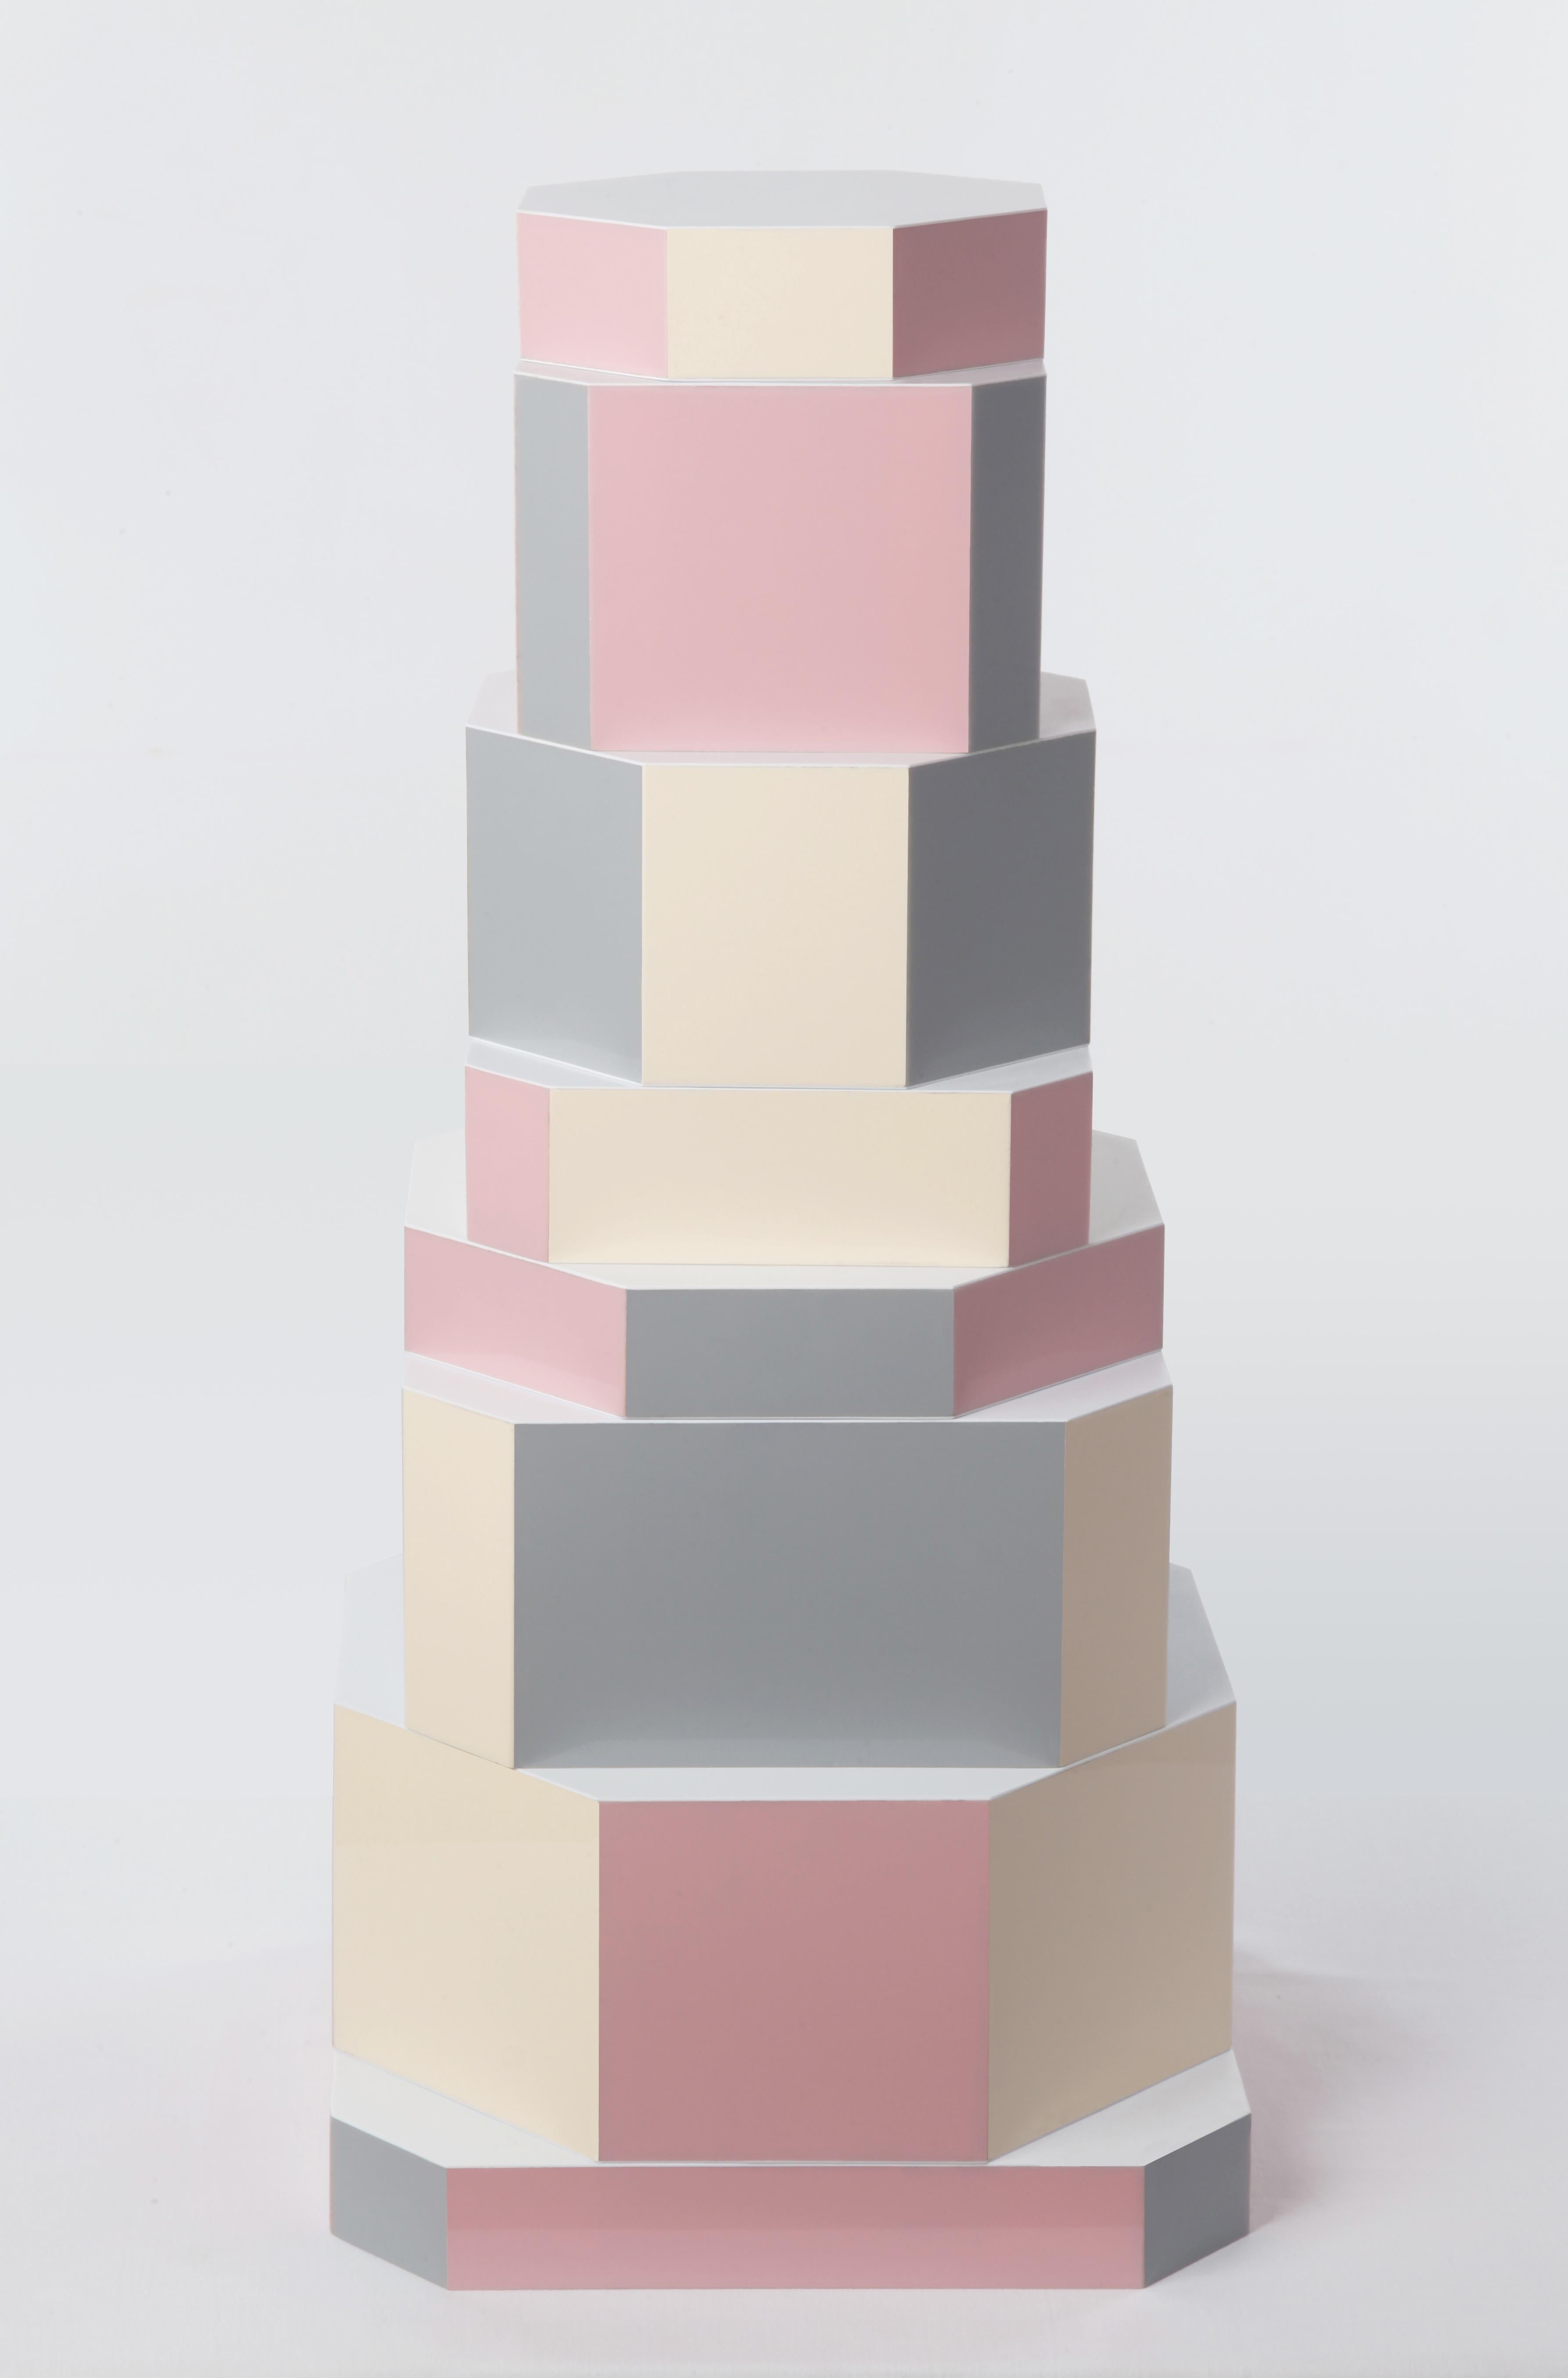 Pixel-Ziggurat-Boxen von Oeuffice
Auflage: 12 + 2AP
2012
Abmessungen: 25 x 25 x 55 cm
MATERIALIEN: Holzkiste, Acryl

Die Pixel-Edition ist eine spielerische Interpretation der Ziggurat-Serie, die
verwendet eine sanfte Palette von komplementären